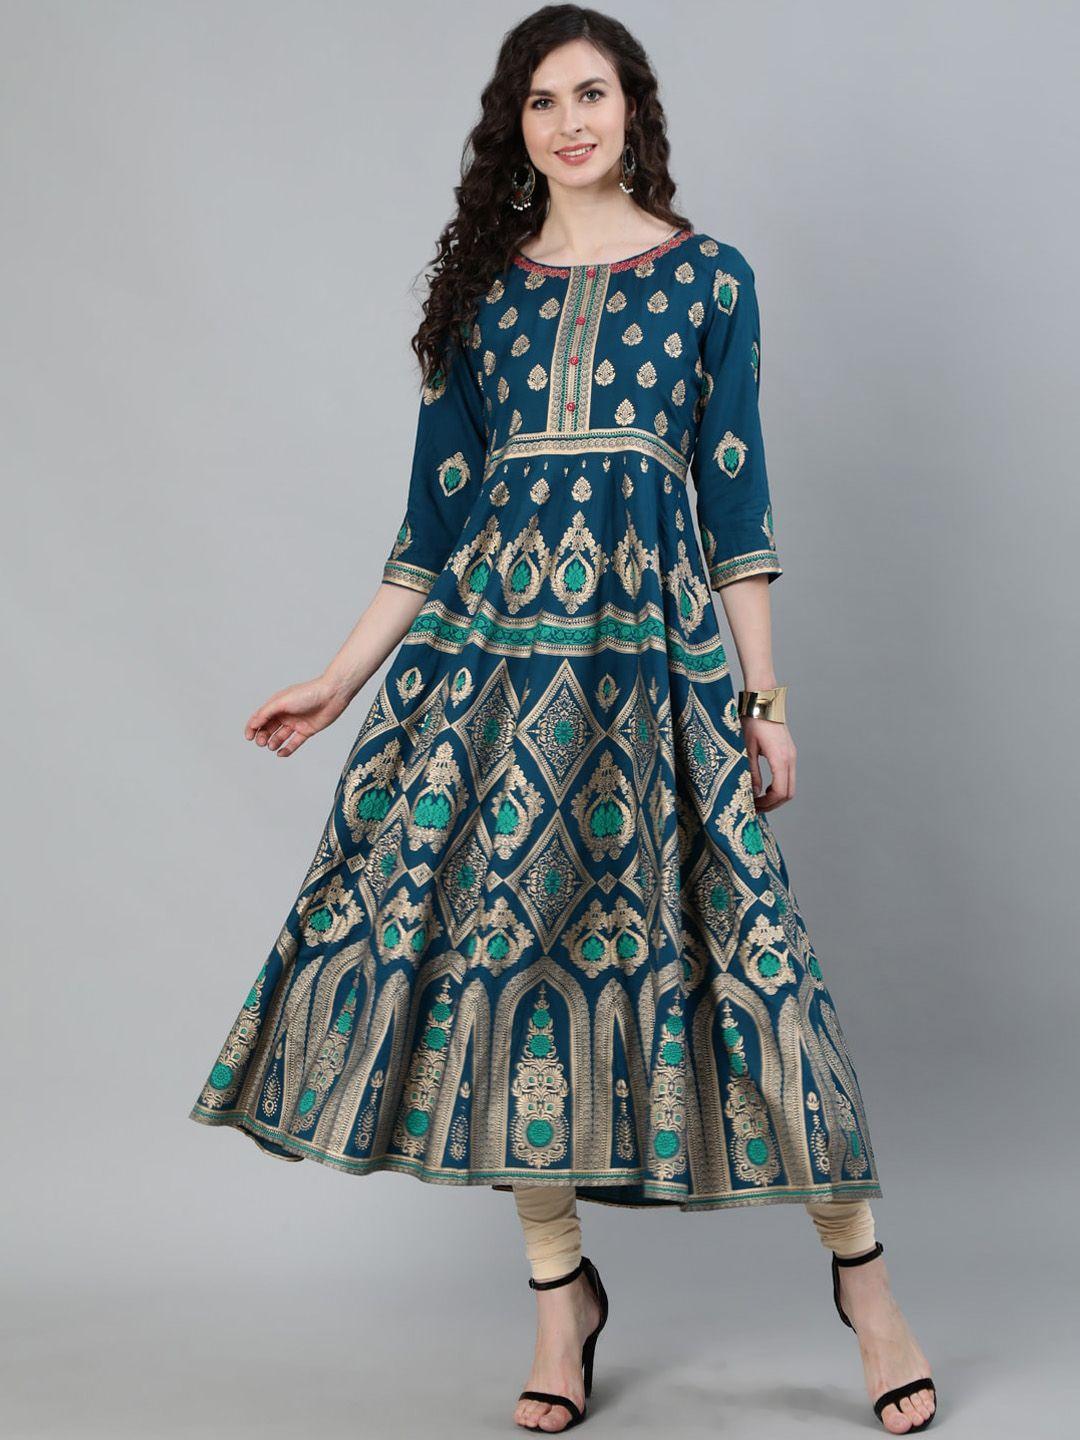 jaipur kurti women turquoise blue & gold ethnic motifs printed handloom anarkali kurta